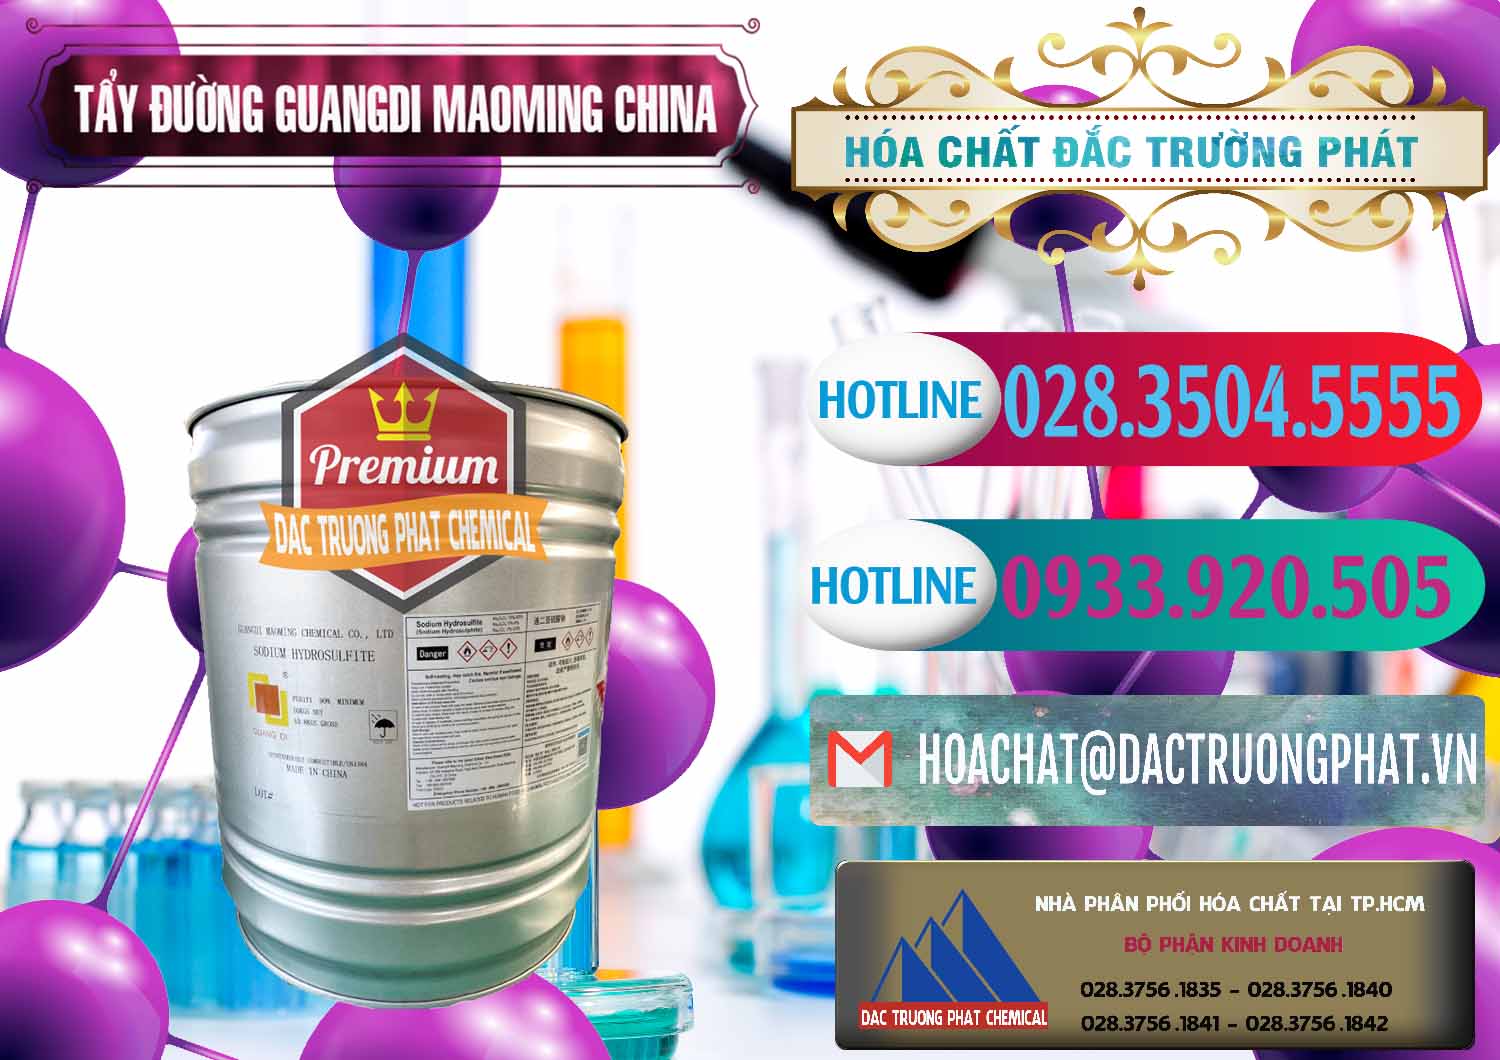 Cty cung cấp - bán Tẩy Đường - NA2S2O4 Guangdi Maoming Thùng Xám Trung Quốc China - 0402 - Phân phối ( bán ) hóa chất tại TP.HCM - truongphat.vn